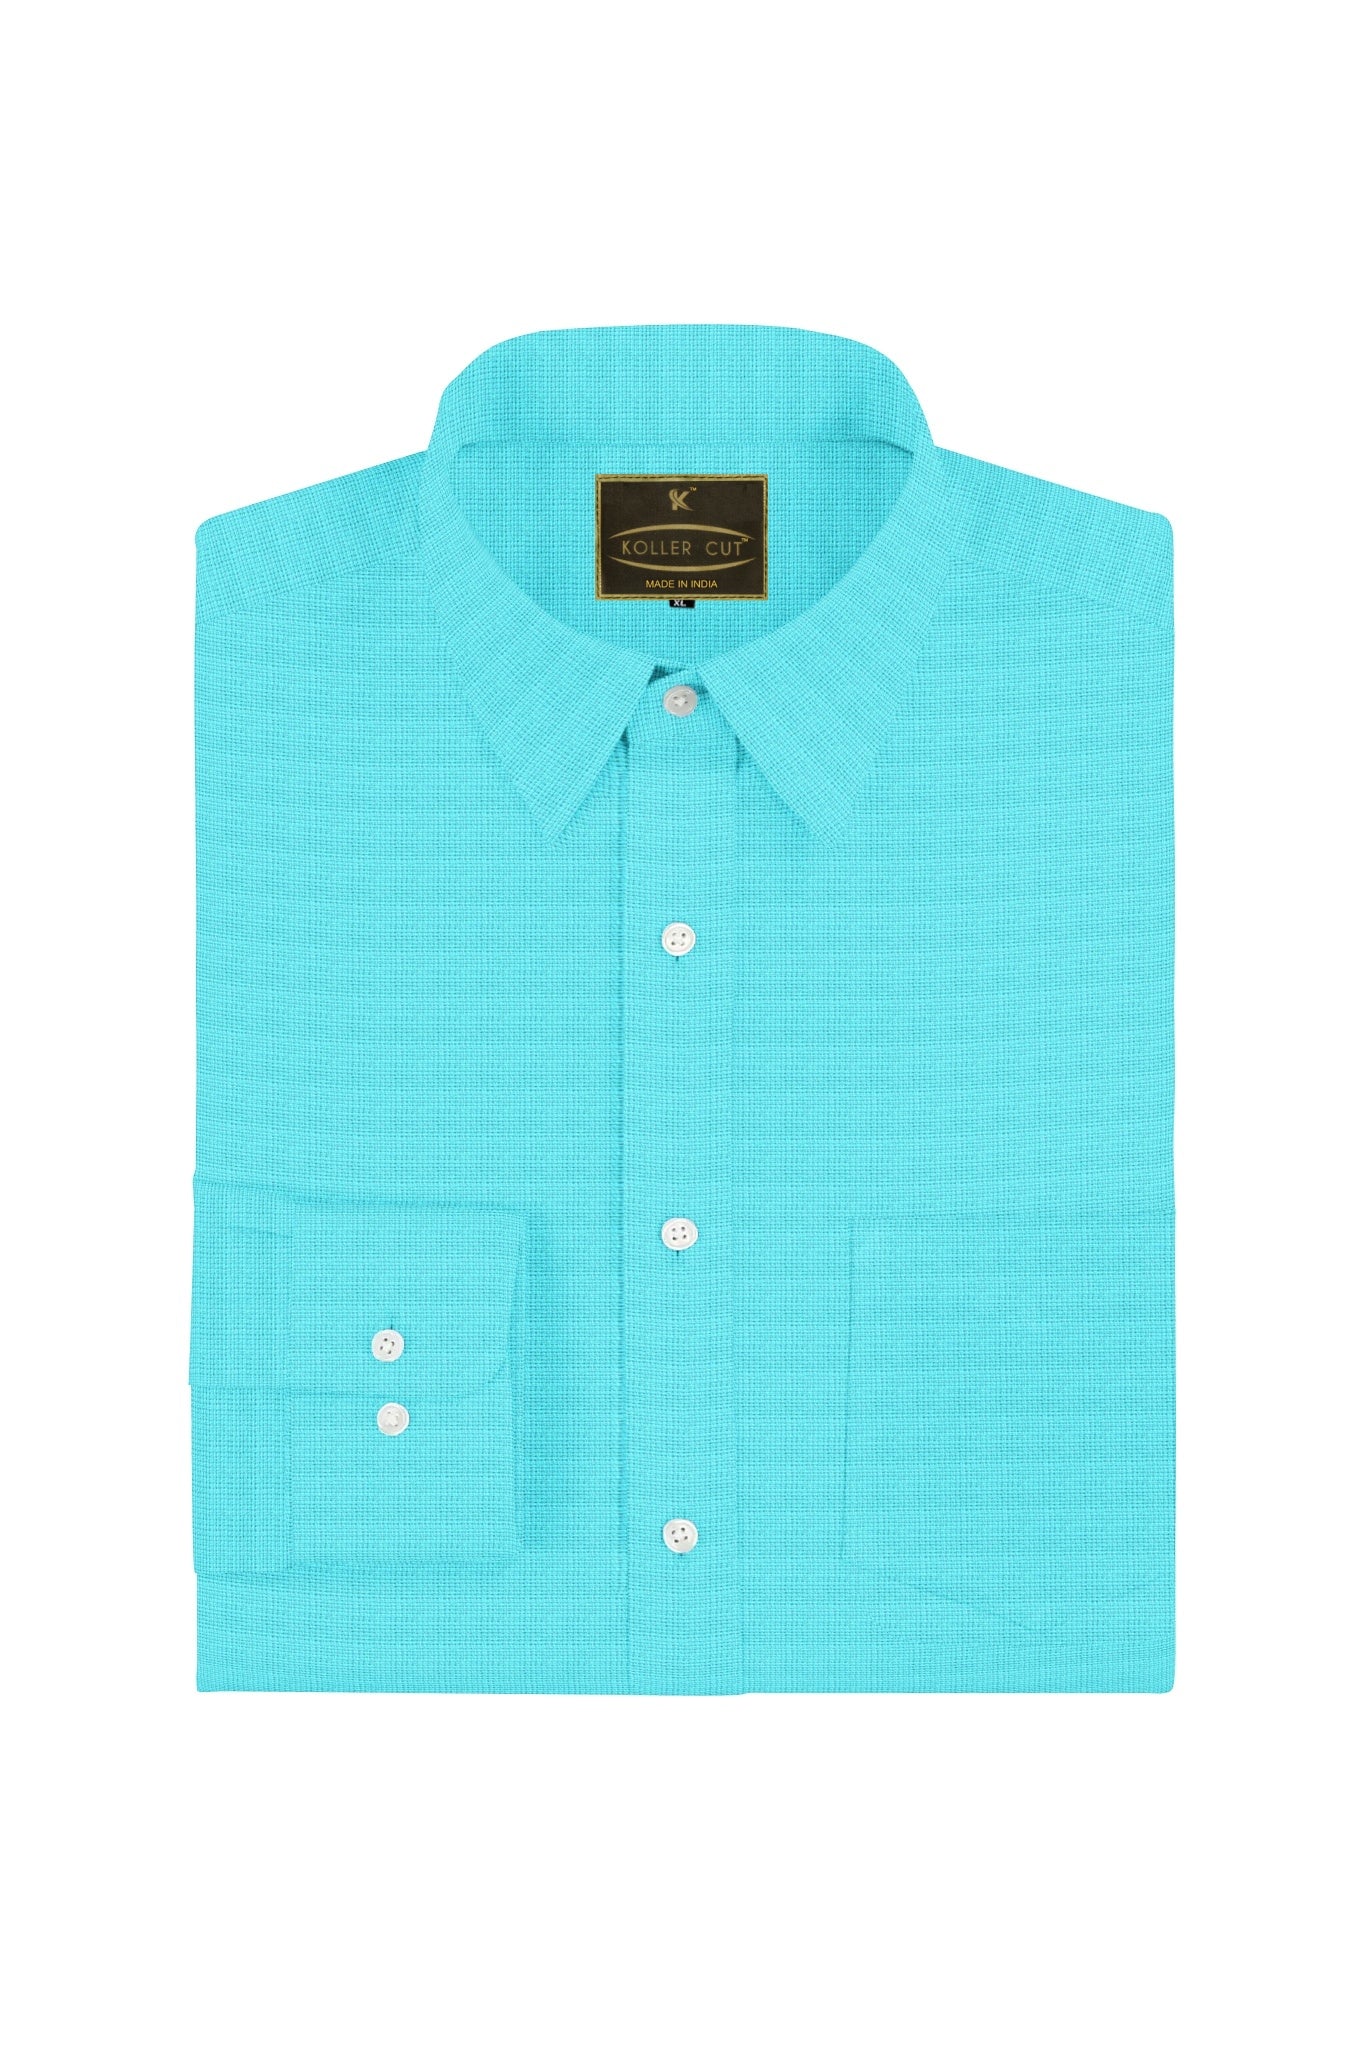 Cyan Blue Men's Cotton Linen Shirt